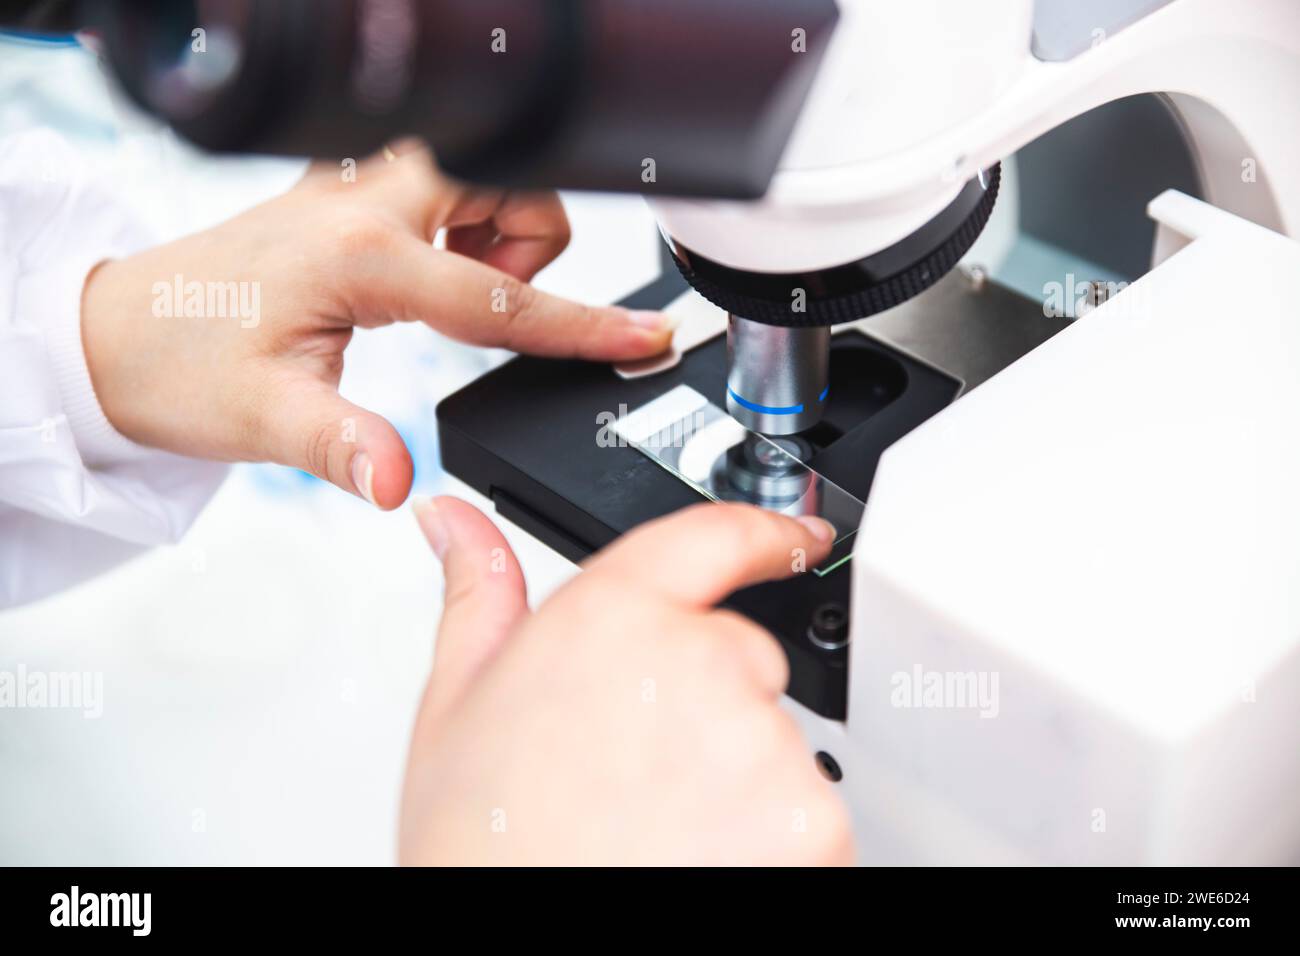 Hände des Mikrobiologen, der die Probe im Mikroskop positioniert Stockfoto